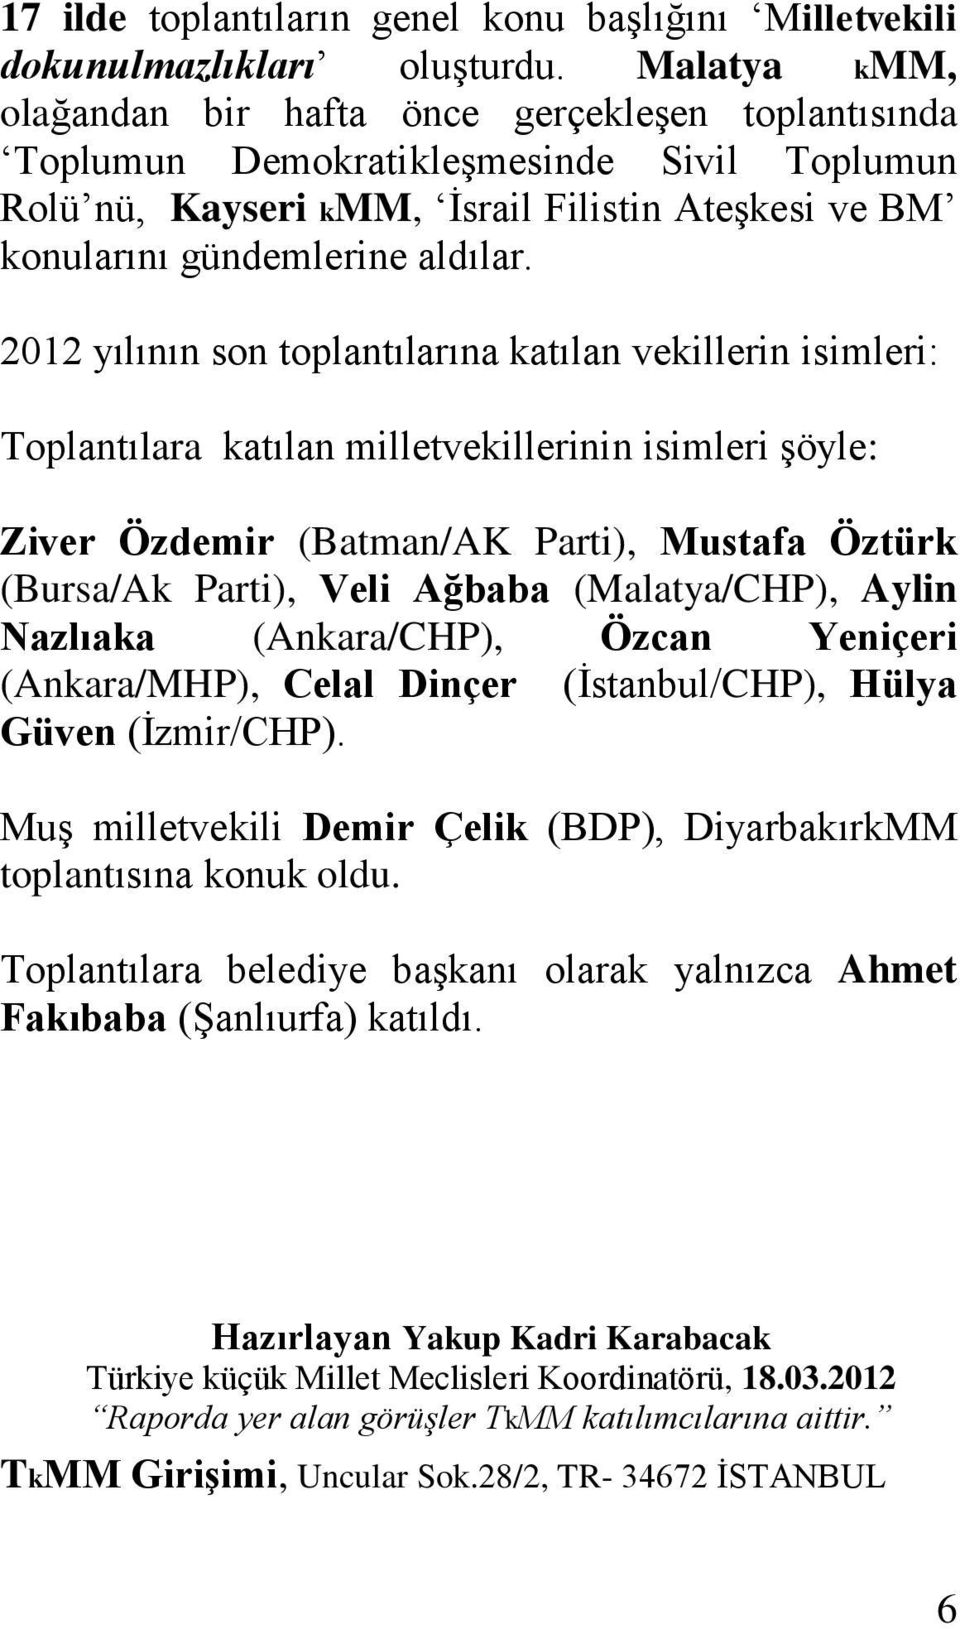 2012 yılının son toplantılarına katılan vekillerin isimleri: Toplantılara katılan milletvekillerinin isimleri şöyle: Ziver Özdemir (Batman/AK Parti), Mustafa Öztürk (Bursa/Ak Parti), Veli Ağbaba